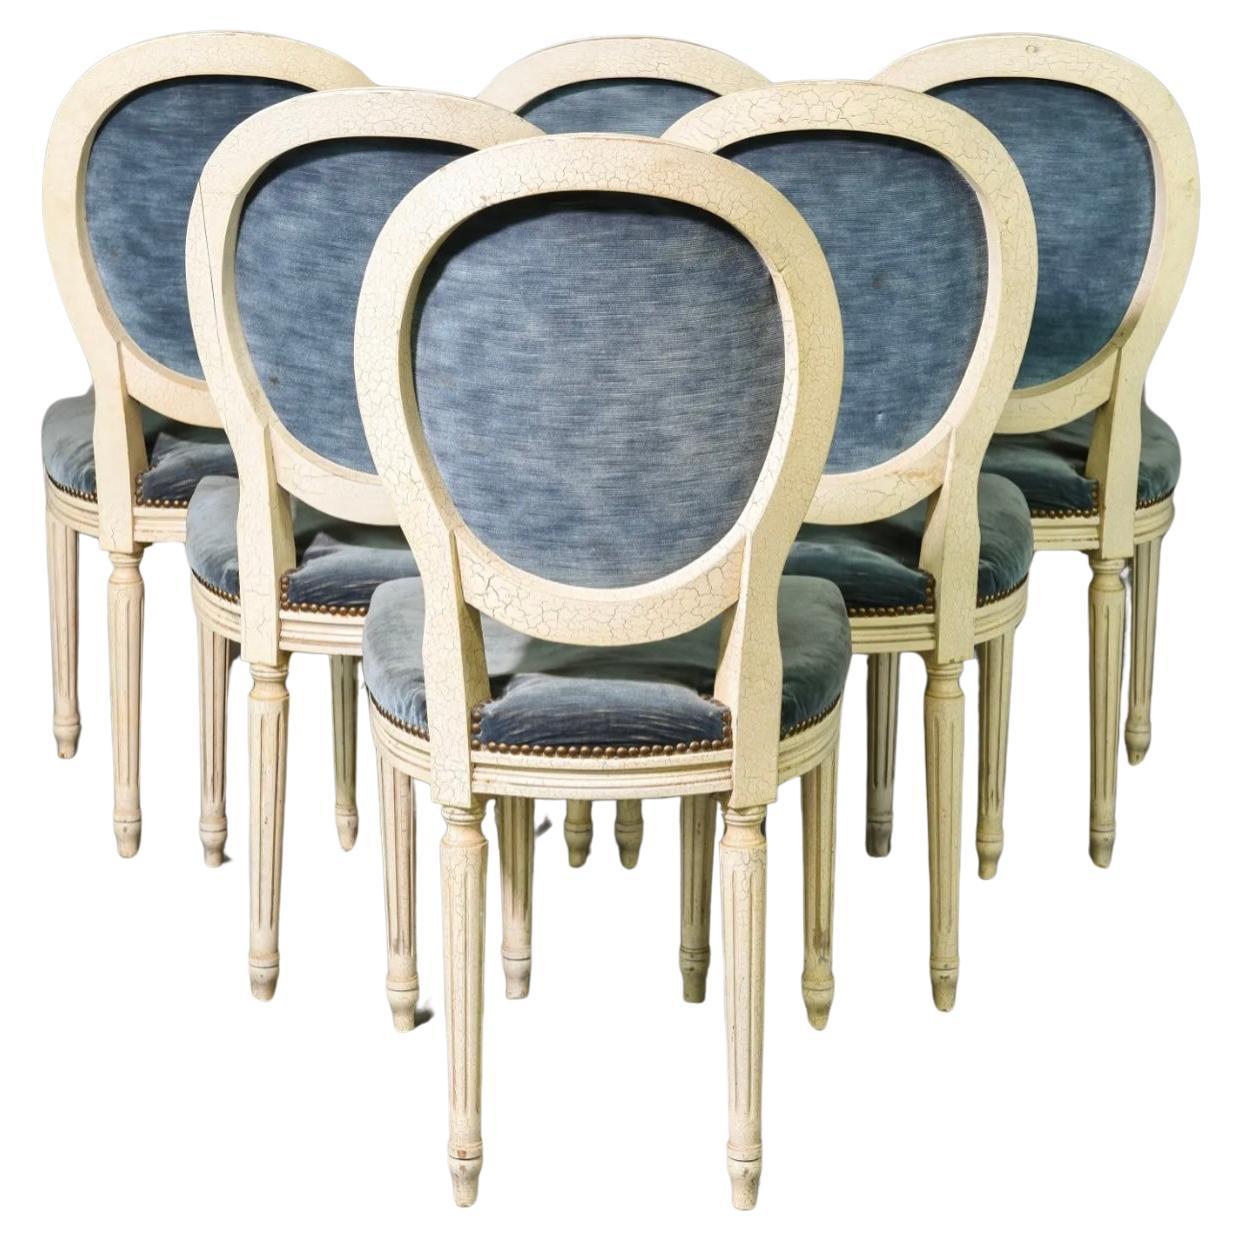 Satz von 6 französischen Stühlen im Louis XVI-Stil mit bemalter Ballonlehne. Jeder Stuhl verfügt über einen handgeformten Rahmen mit einer ovalen Medaillon-Rückenlehne und ist mit einem weichen blauen Stoff gepolstert, der mit Messingnägeln verziert